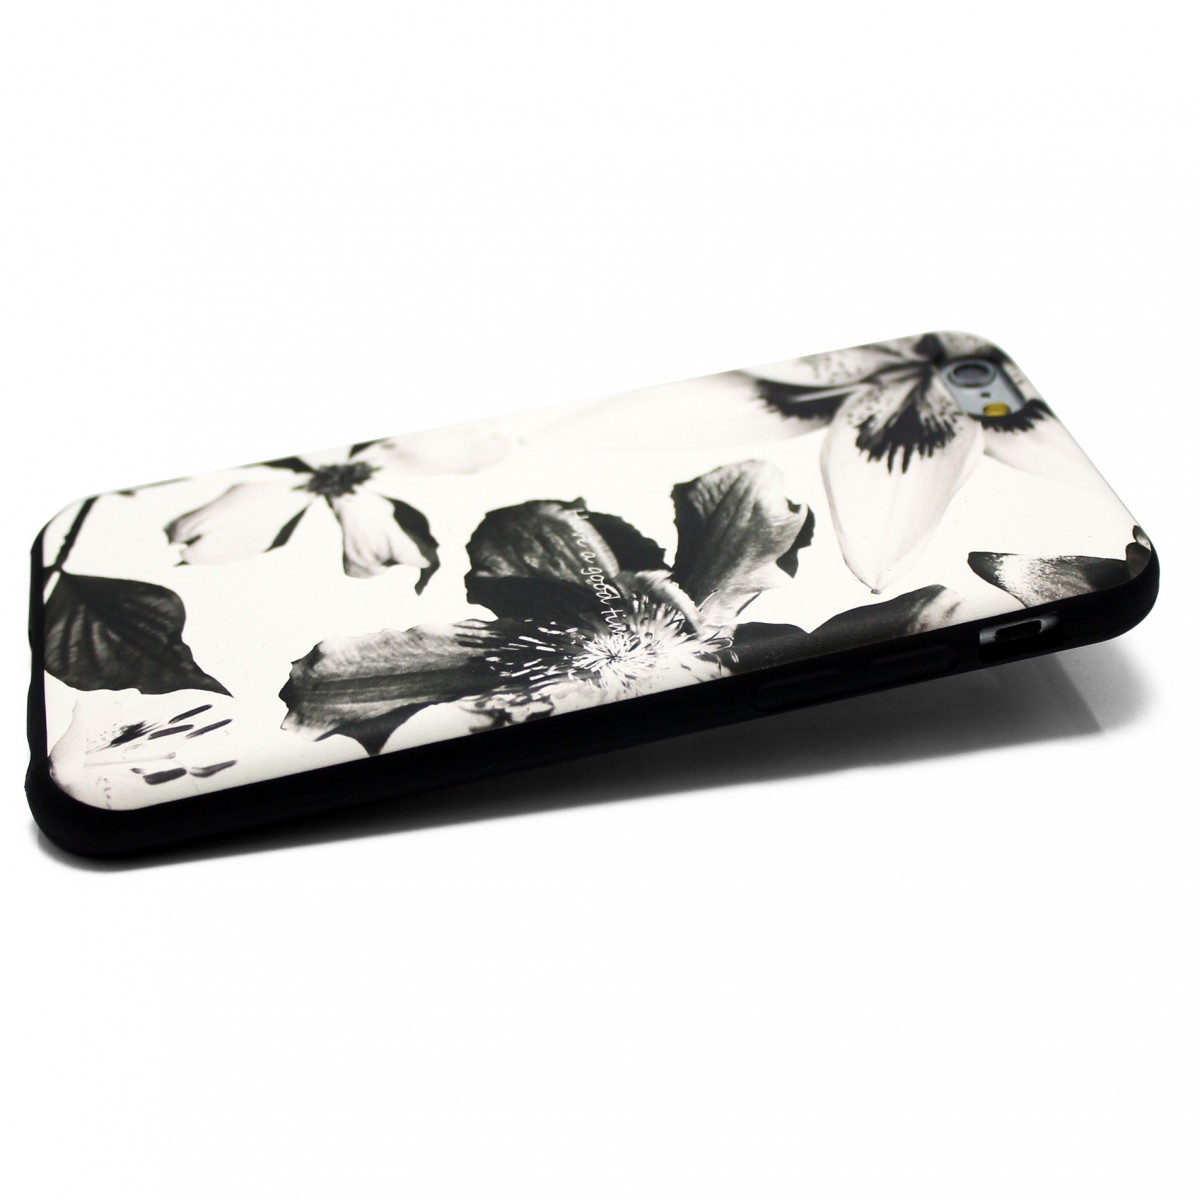 Iphone6 Iphone6sケース 4 7寸用 軽量レザーケースiphone6カバー 花柄 ブラック ホワイトフラワー Iichi ハンドメイド クラフト作品 手仕事品の通販